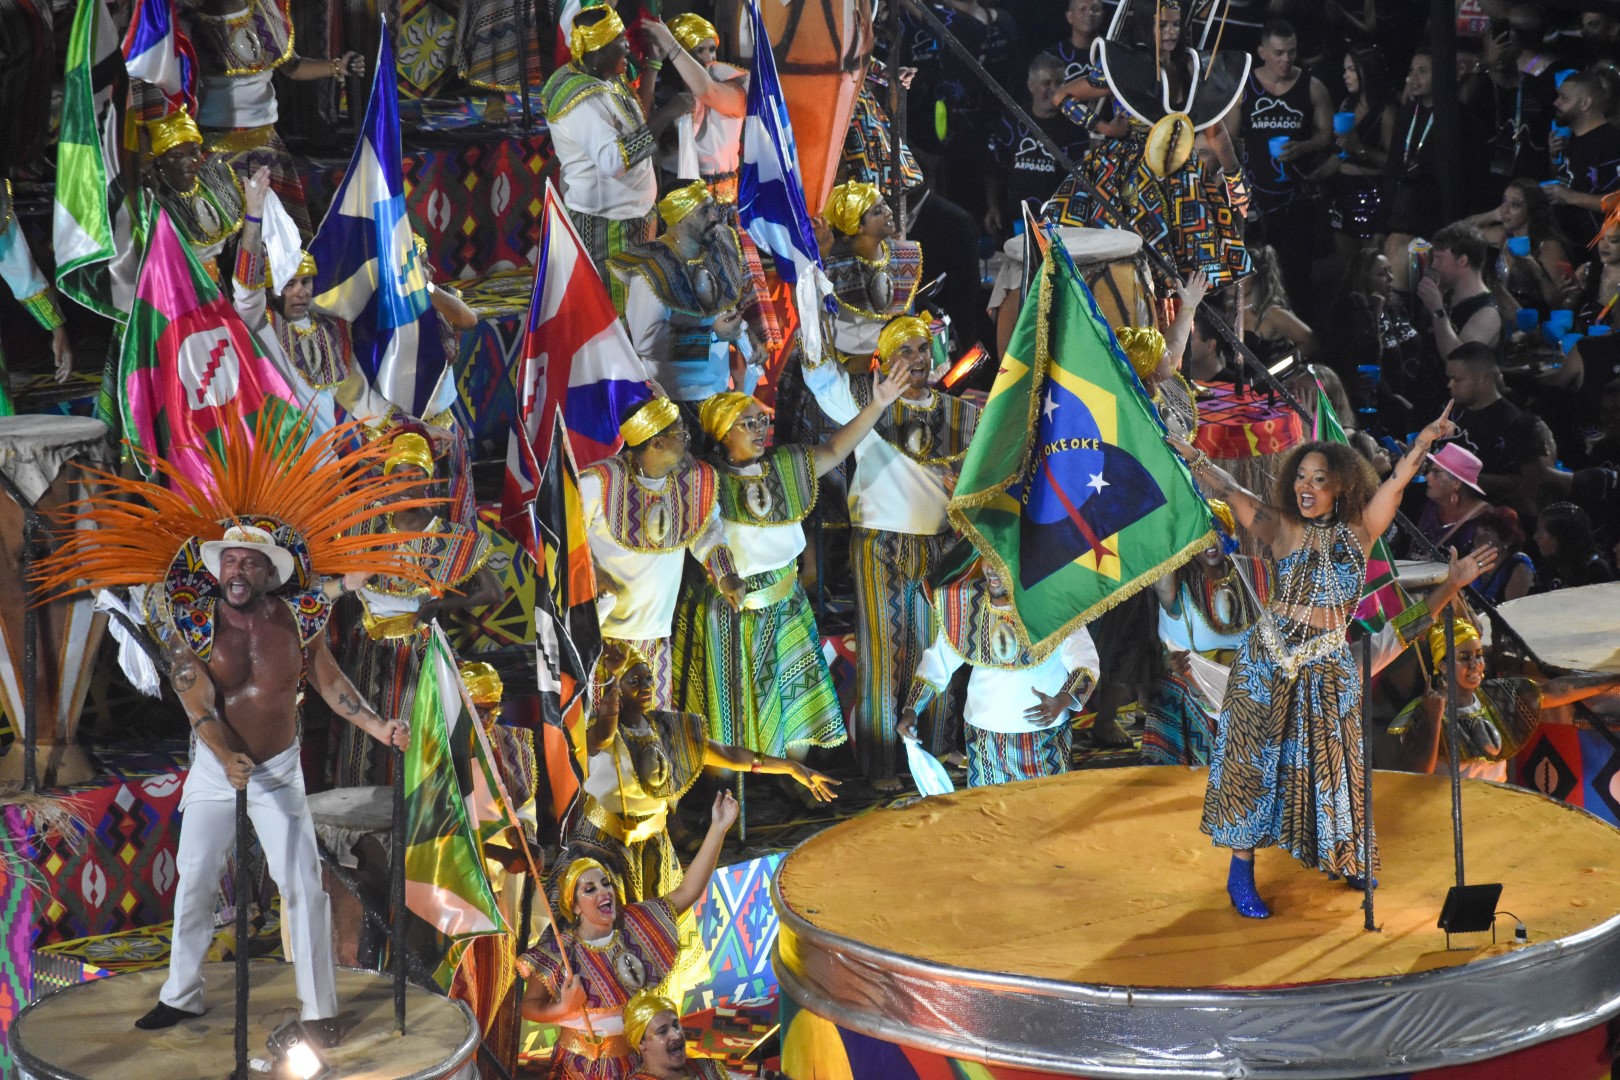 Lins Imperial, samba school parade, Sambodromo Marquês de Sapucaí, Rio de Janeiro